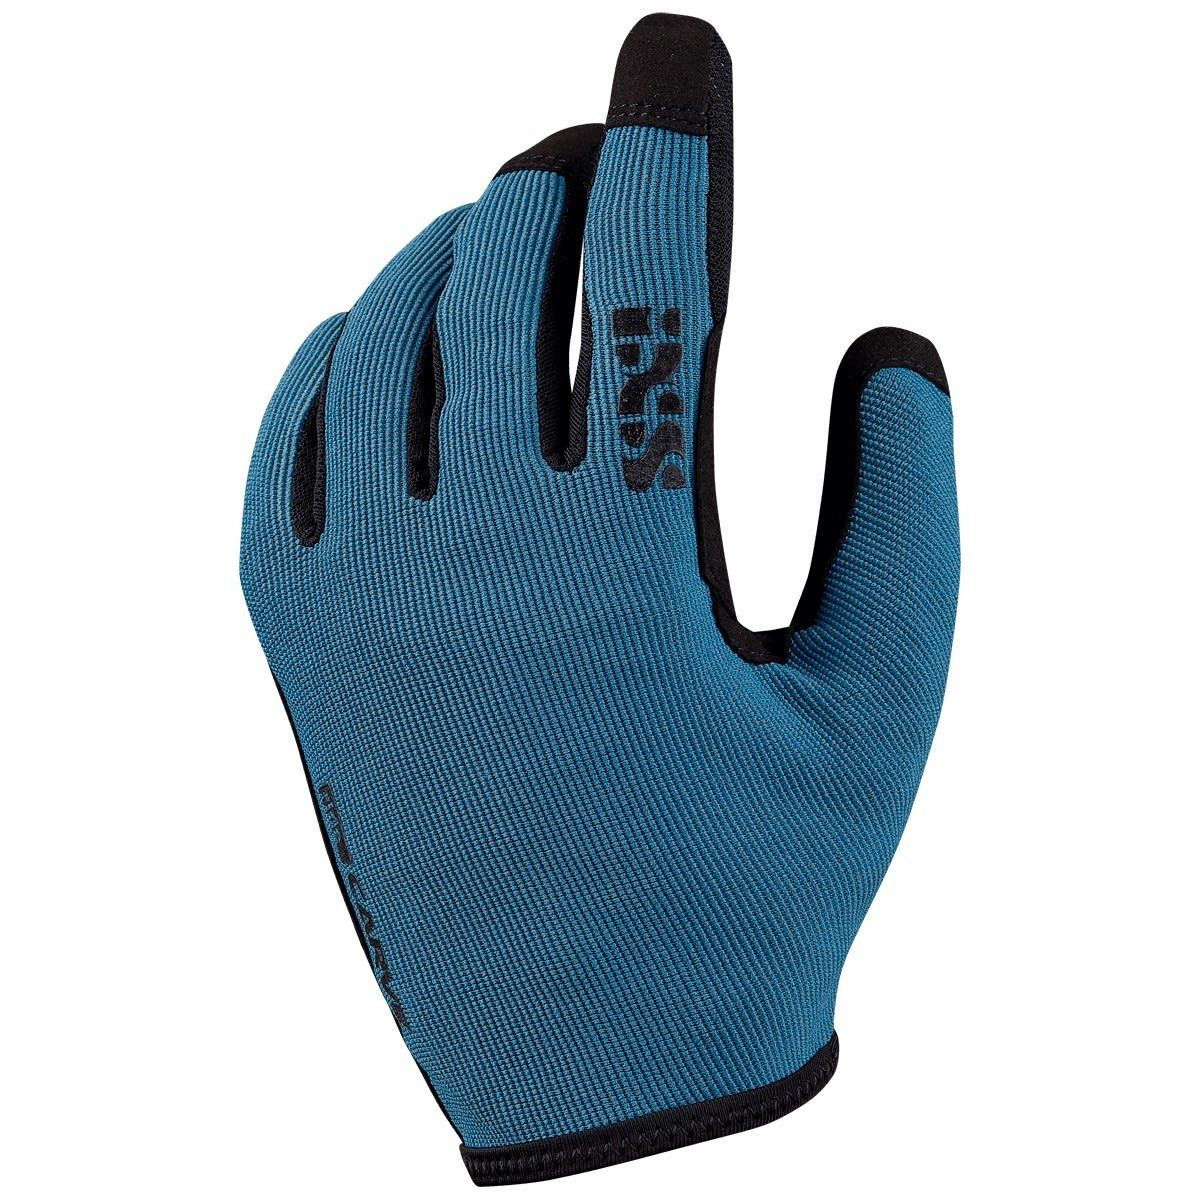 Carve Ocean Accessoires Ixs Gloves IXS Fleecehandschuhe